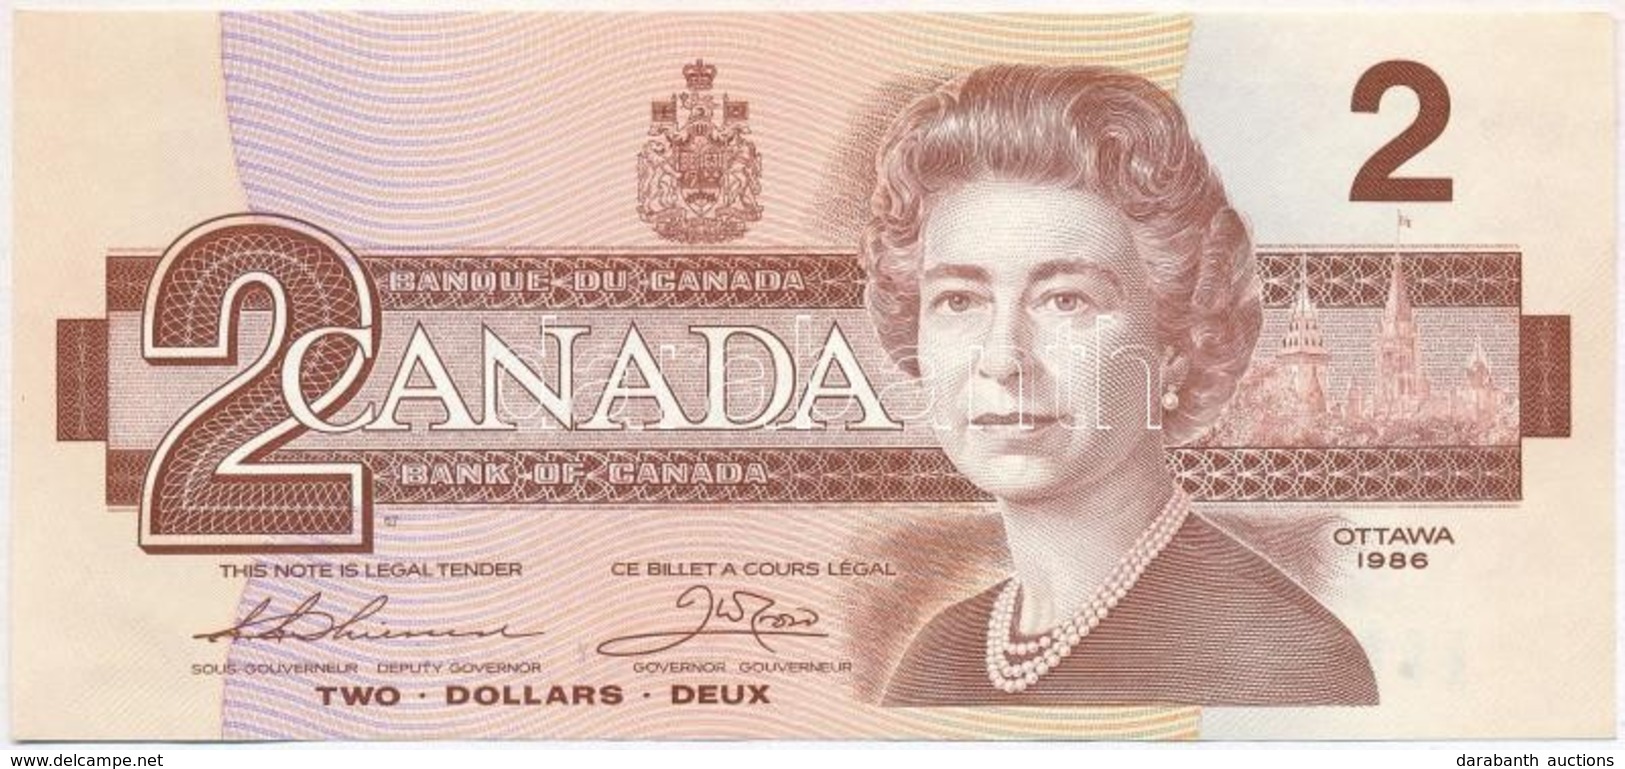 Kanada 1986. 2$ T:I-
Canada 1986. 2 Dollars C:AU
Krause 94 - Ohne Zuordnung